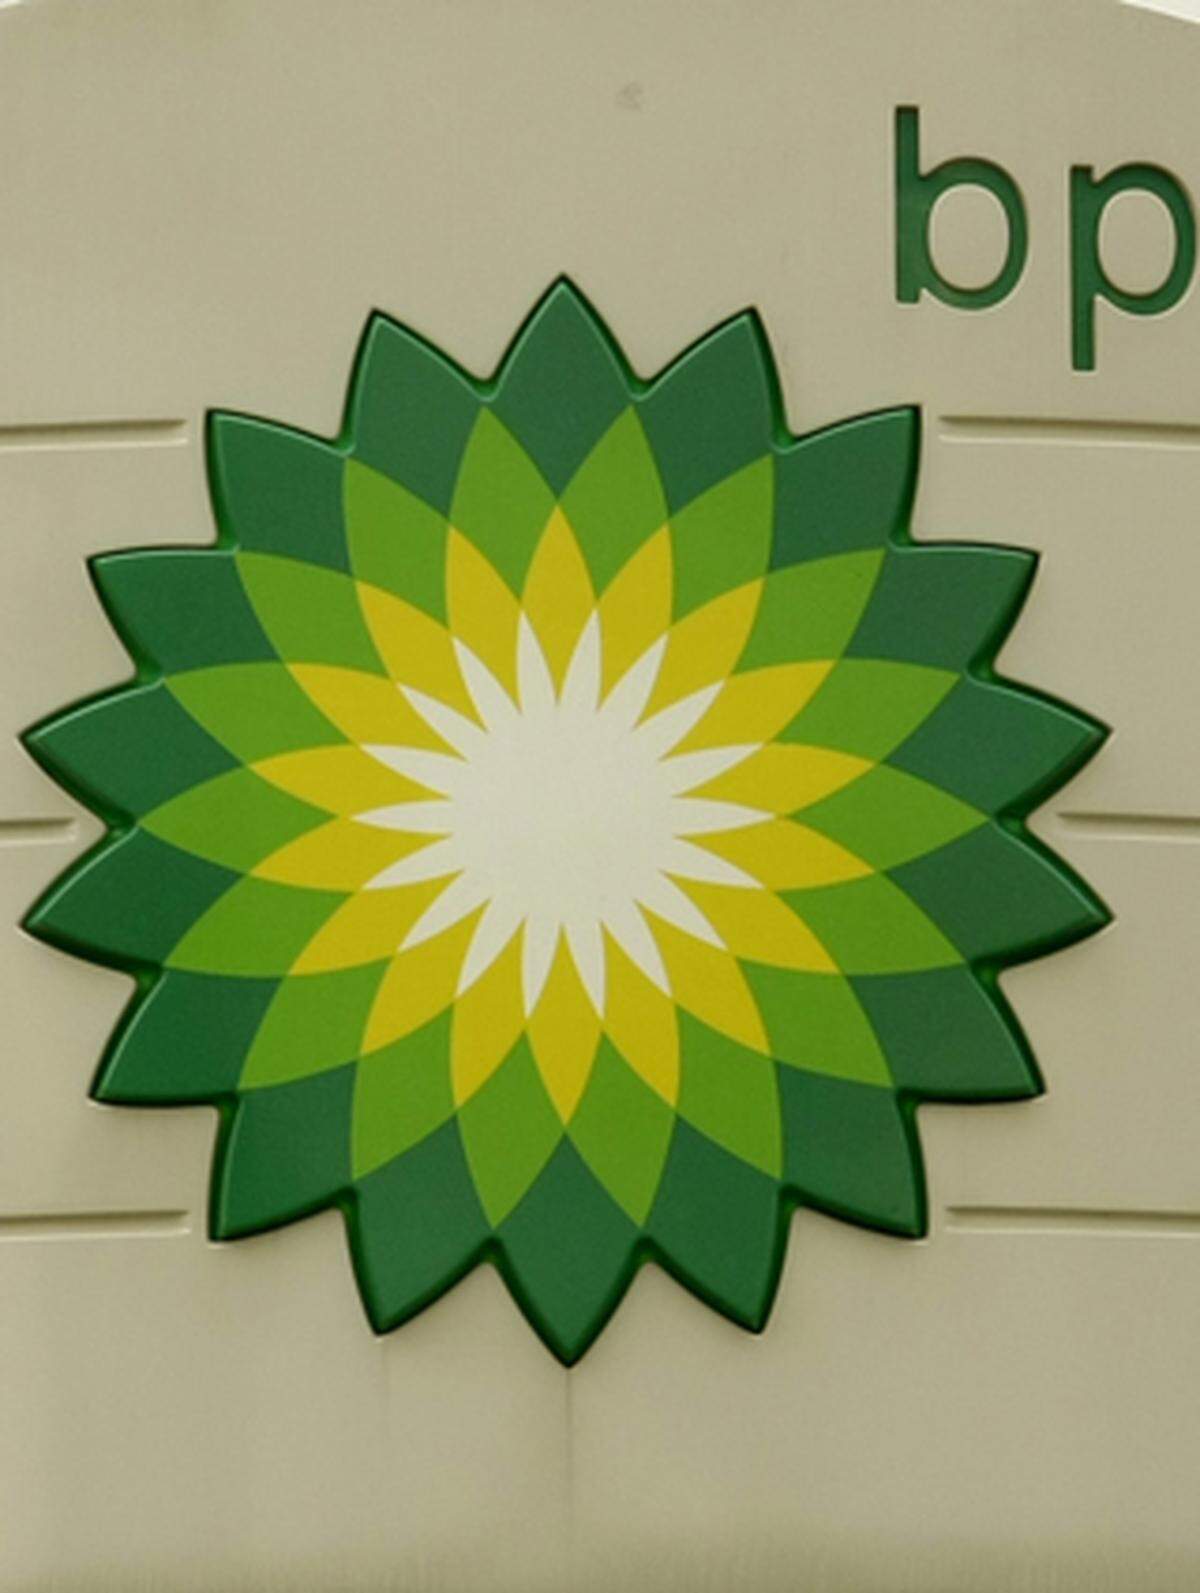 BP verdiente 2008 gesamt 16,85  16,85 Milliarden Euro., obwohl das Schlussquartal fast 2,5 Mrd. Verlust bescherte. Das erste Quartal 2009 war zwar wieder gewinnbringend, mit  1,97 Milliarden Euro aber um zwei Drittel weniger als die ersten drei Monate 2008.